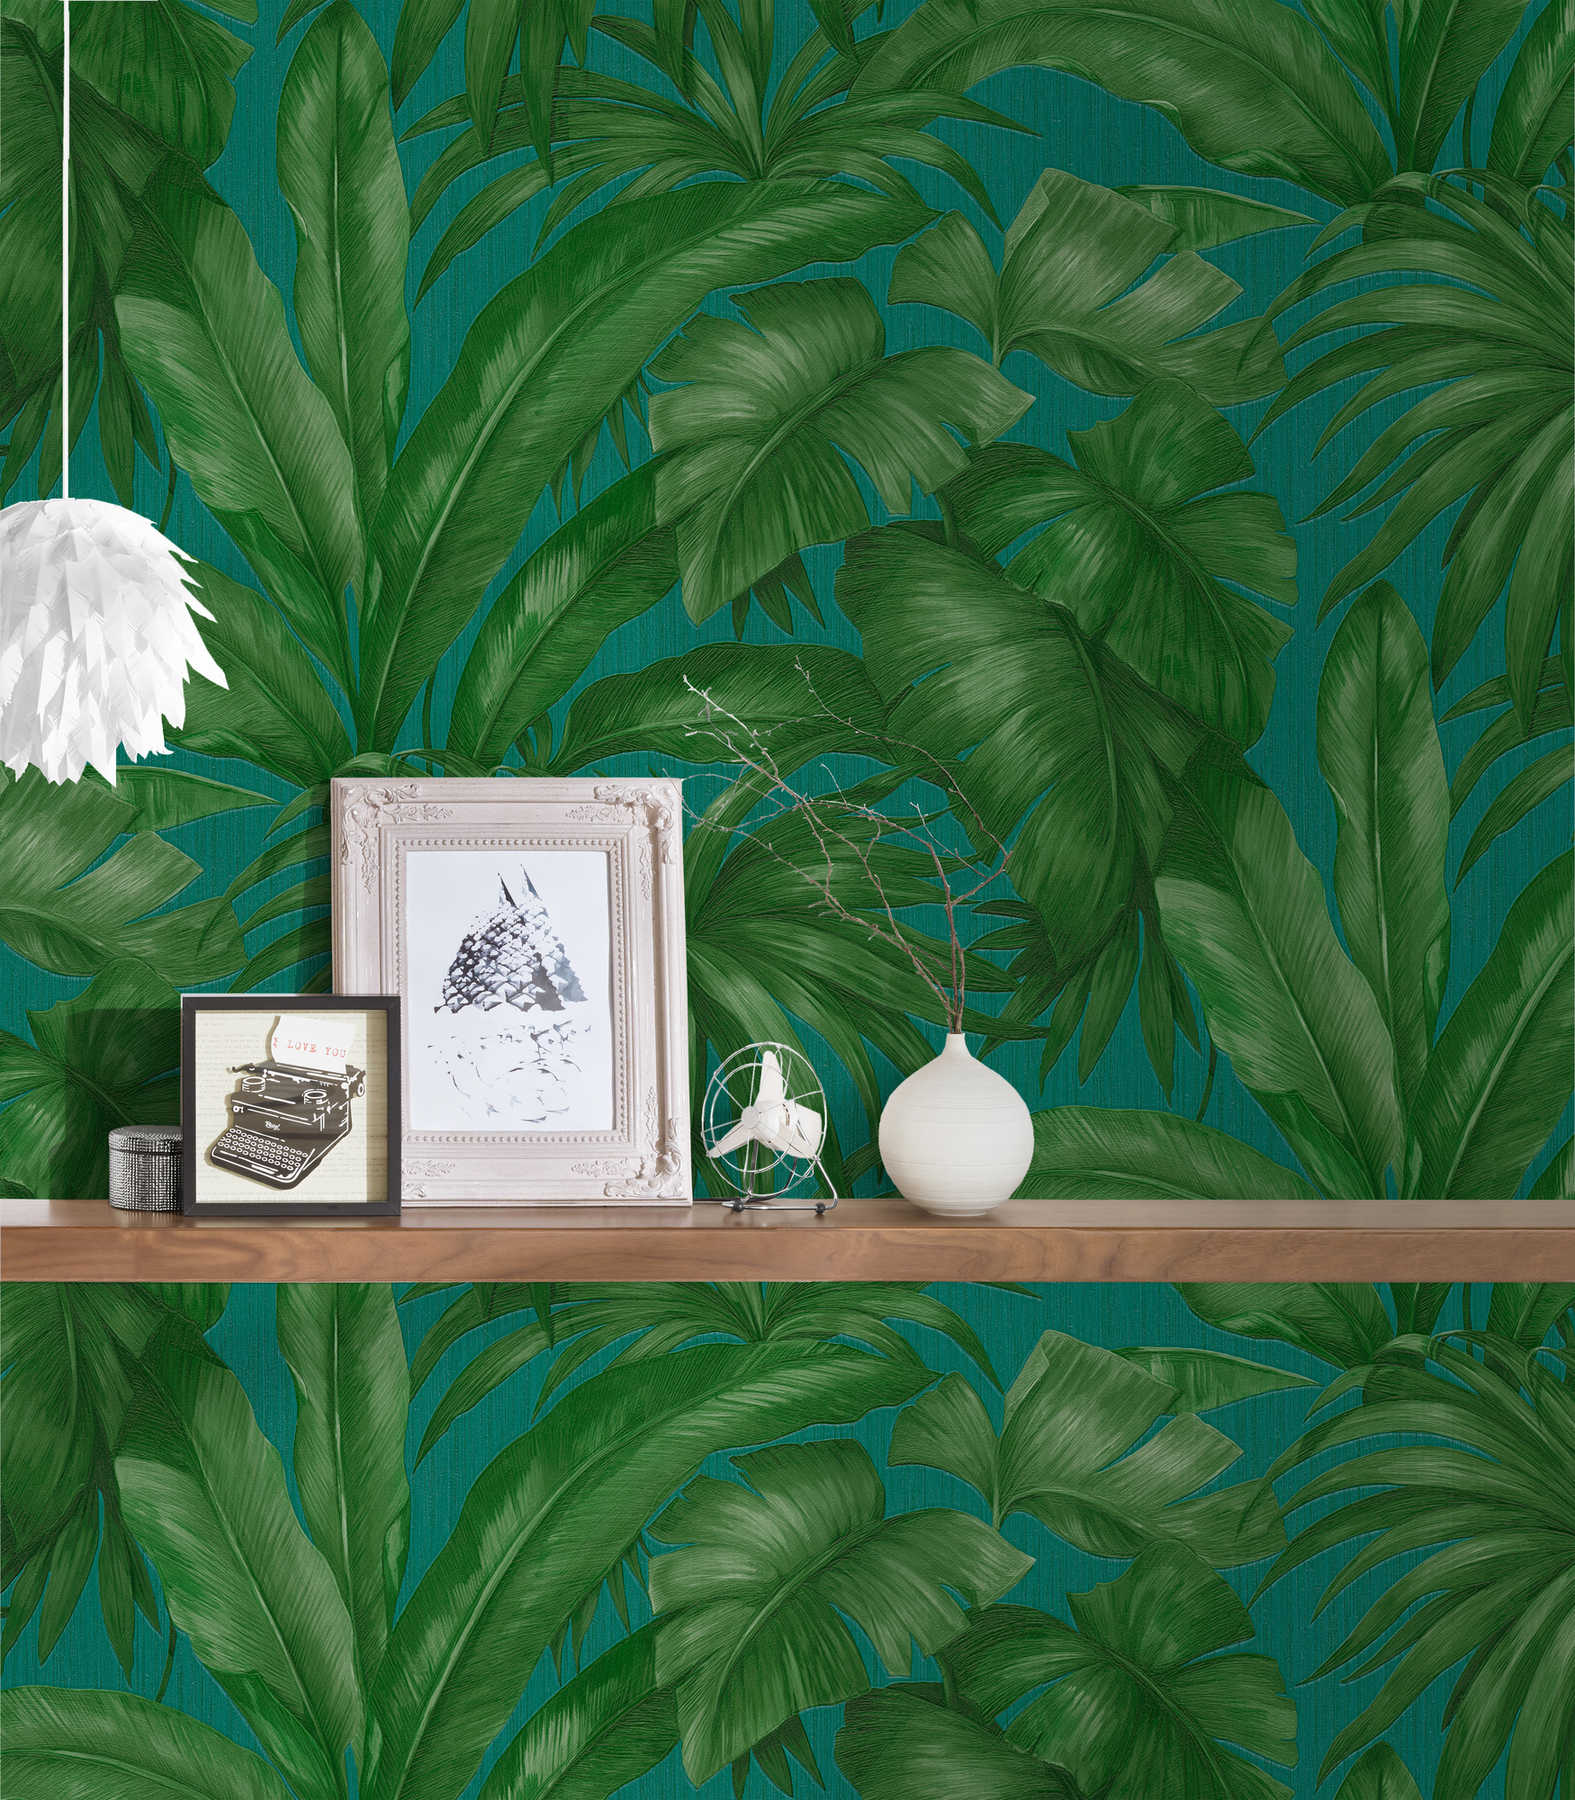             Papel pintado VERSACE selva con motivo de hojas de palmera - verde
        